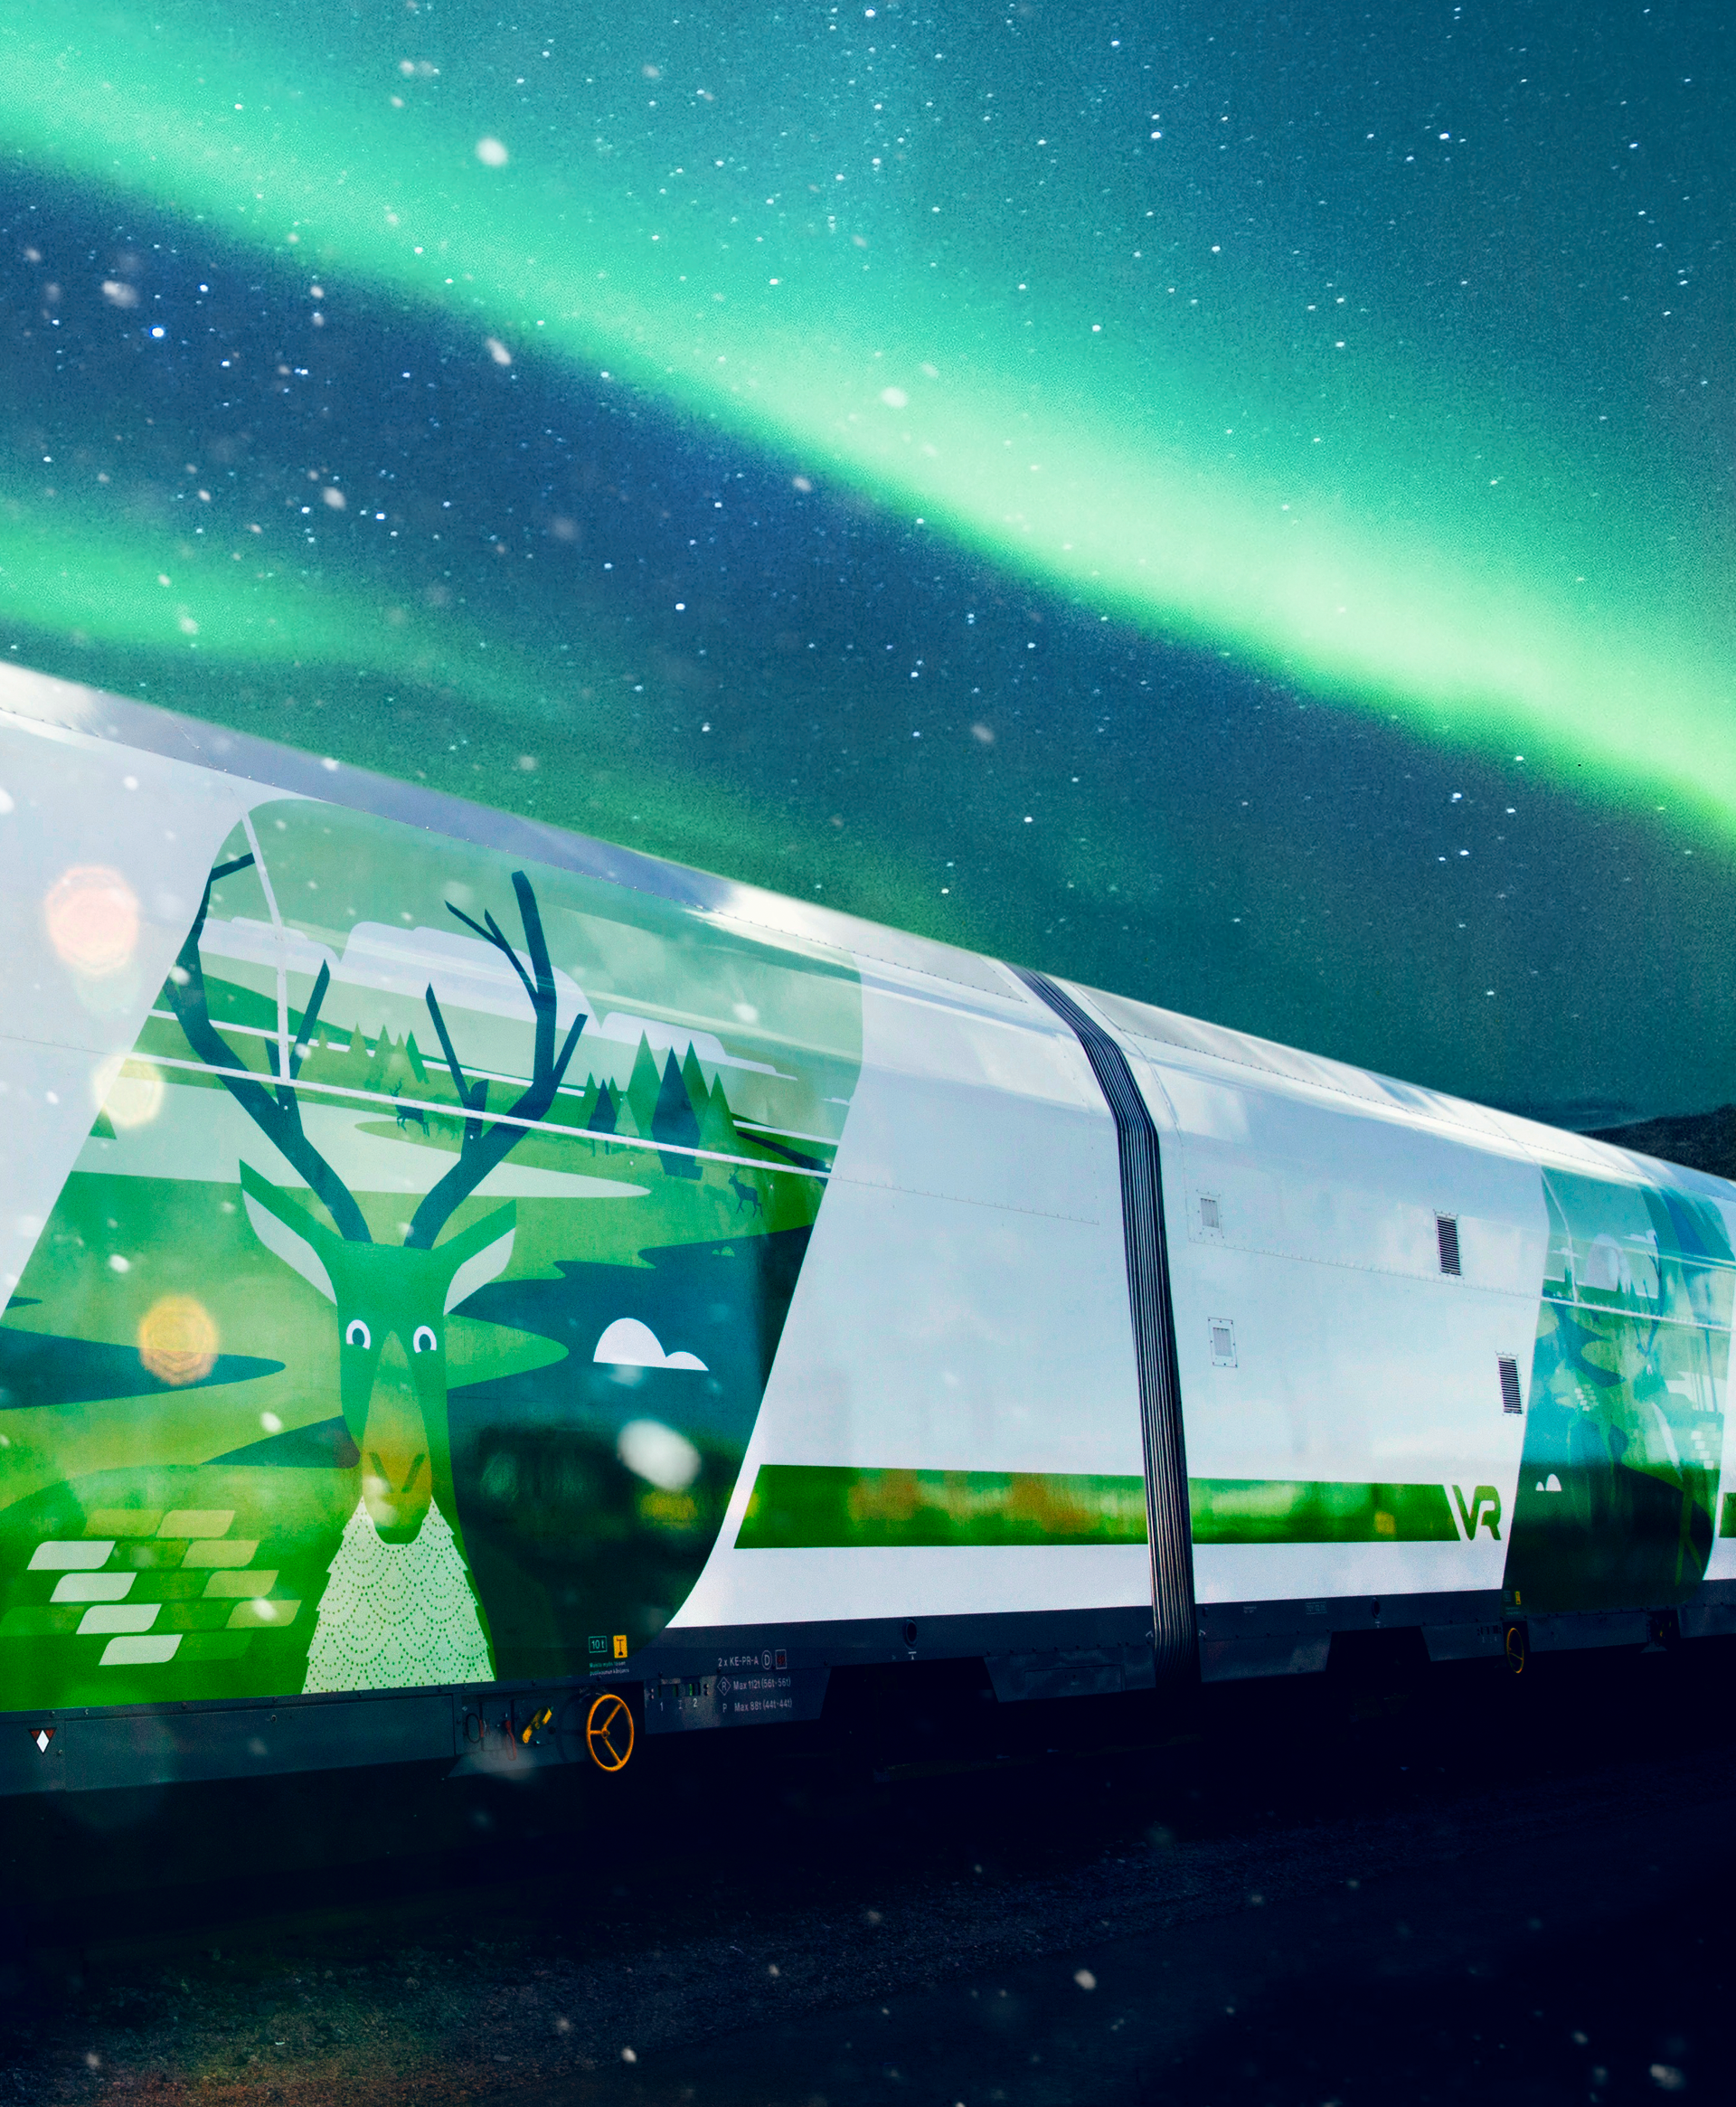 Lippuja kotimaan junamatkoille - jokainen matkasi on täysin hiilineutraali  - VR